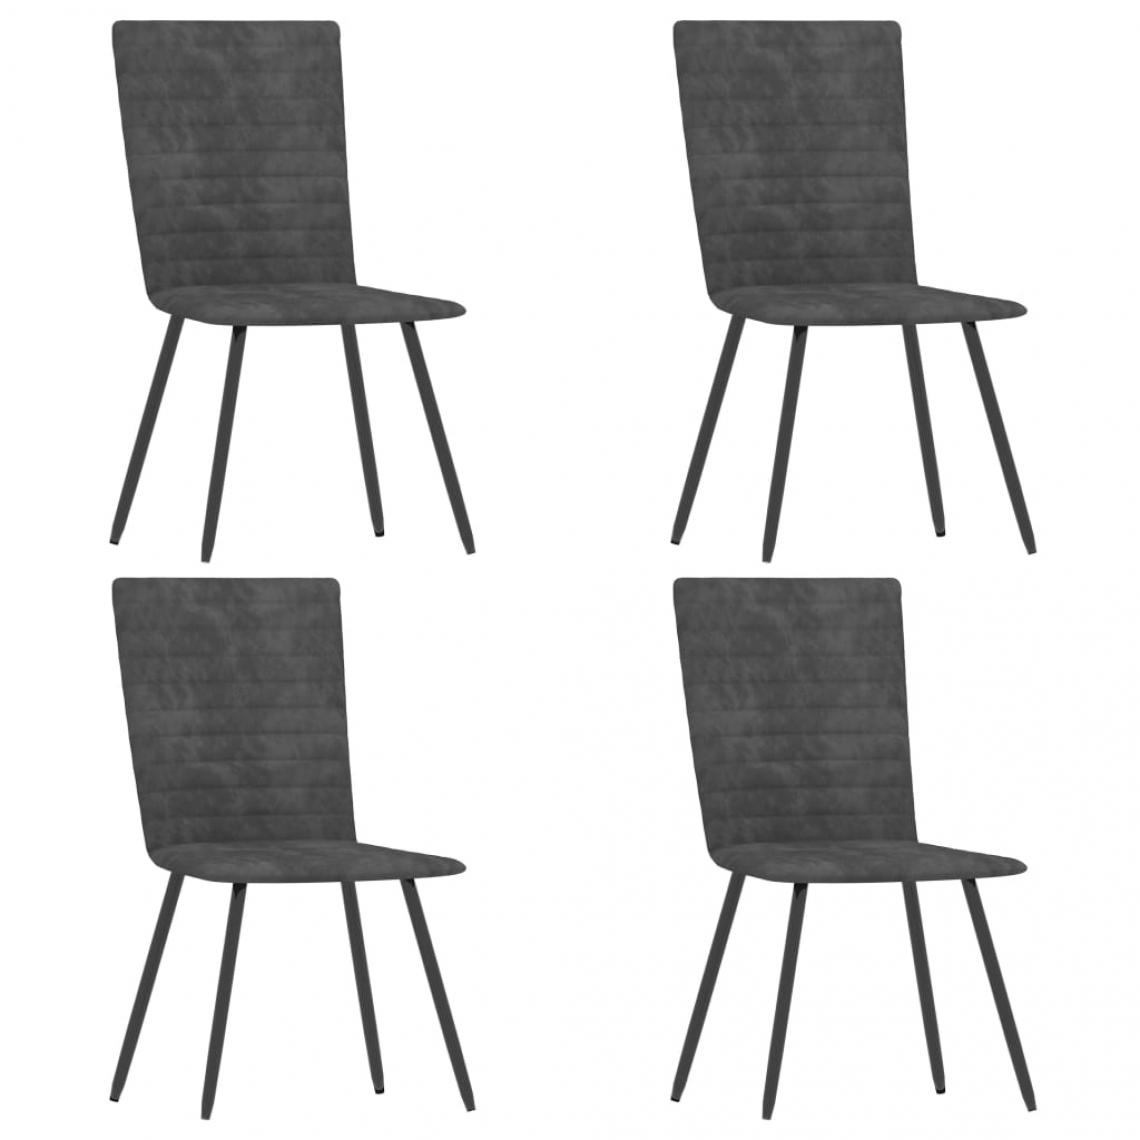 Decoshop26 - Lot de 4 chaises de salle à manger cuisine design moderne velours gris CDS021615 - Chaises